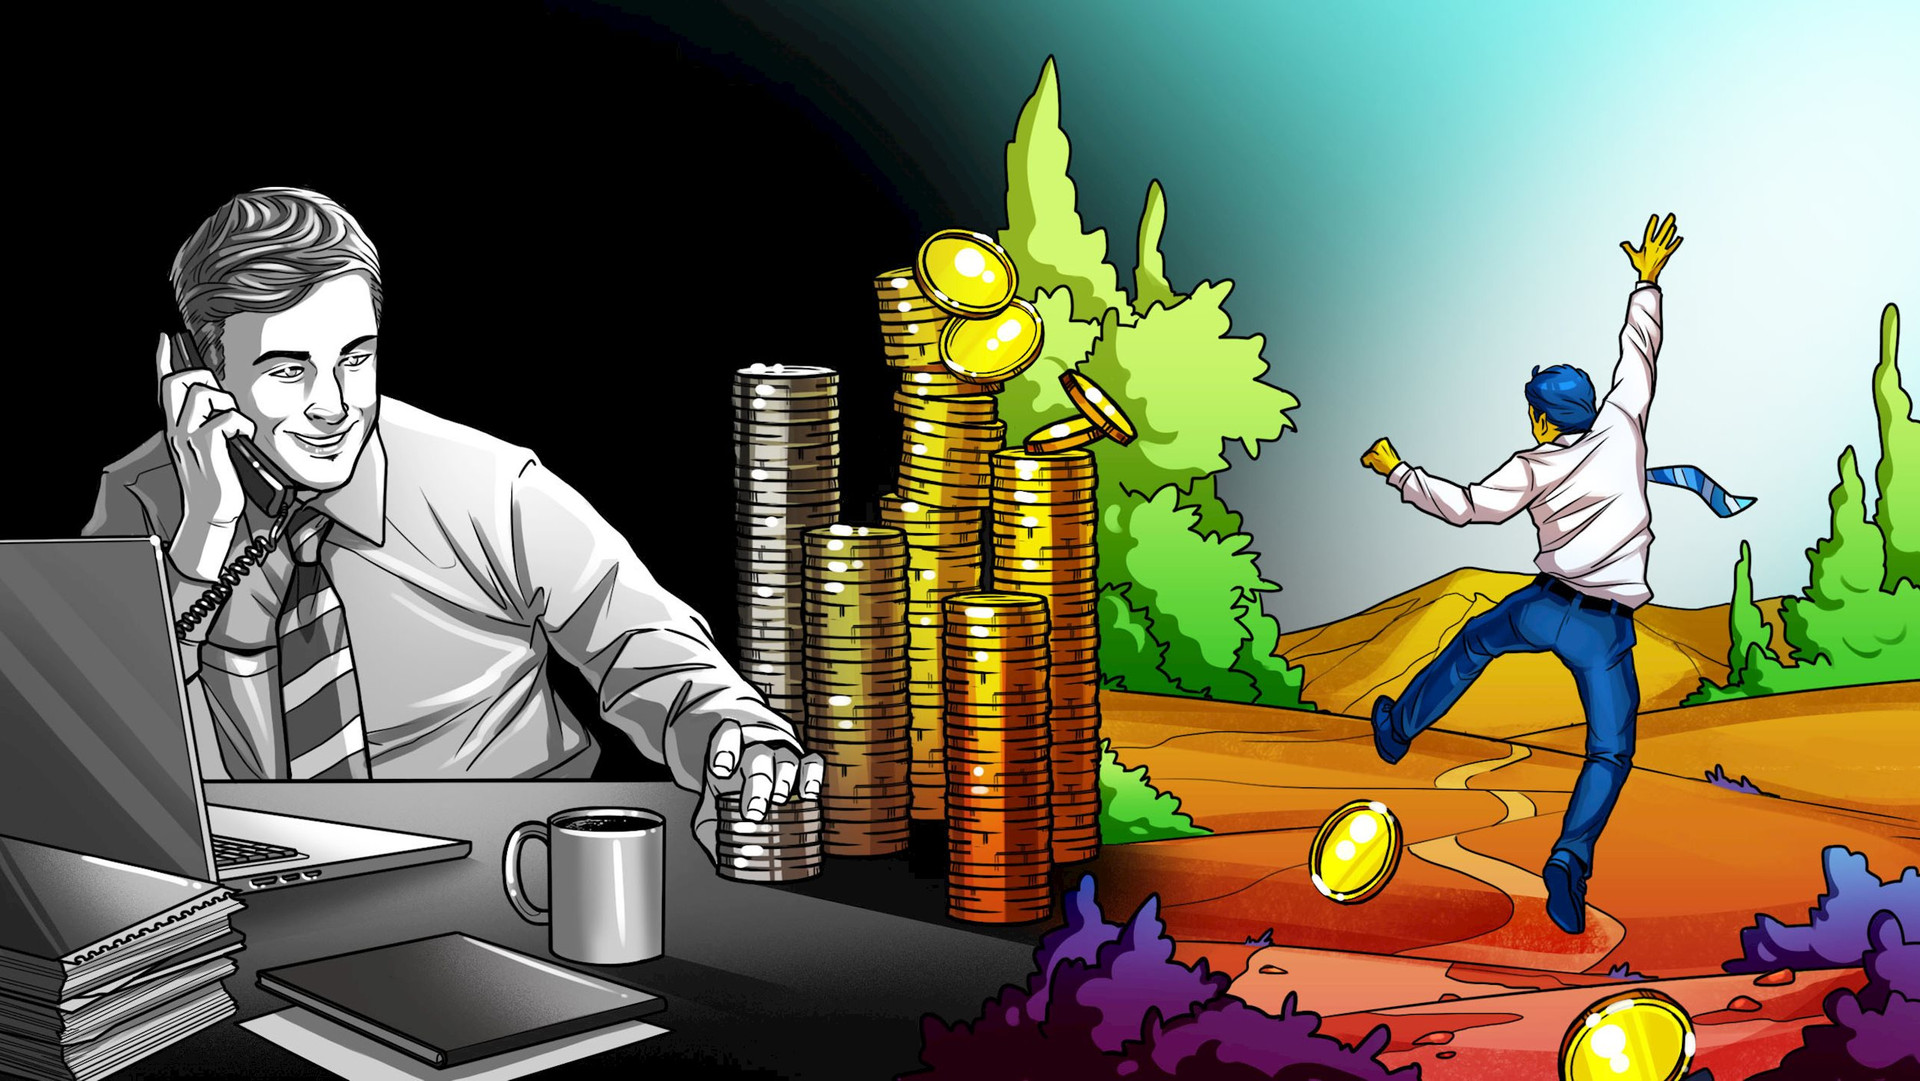 34 tuổi nghỉ hưu với 71 tỷ đồng, người đàn ông tiết lộ: Tiết kiệm từng cốc cà phê là ‘thất sách’, muốn làm giàu phải nắm được tư duy ‘tiền đẻ ra tiền’ - Ảnh 1.